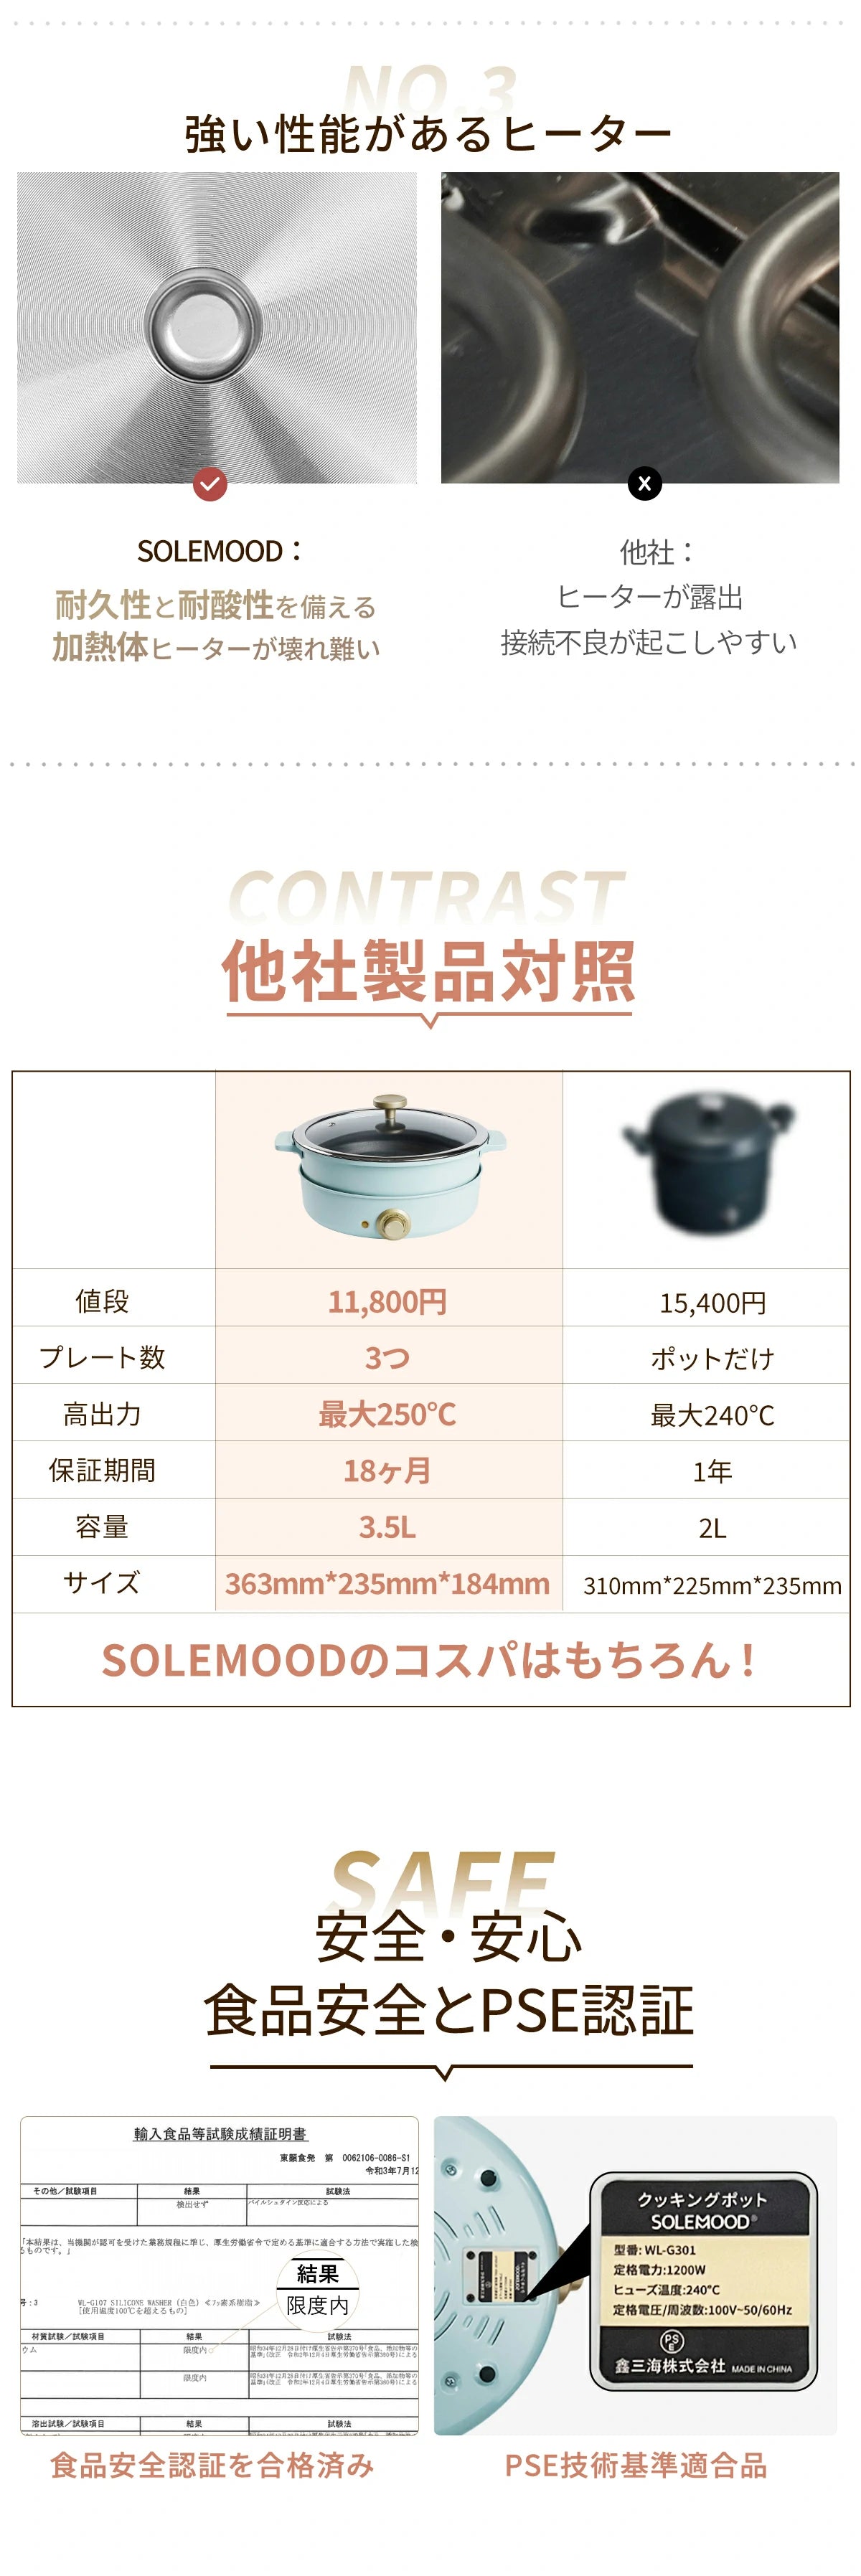 他社製品との比べ クッキングポット SOLEMOOD WL-G301